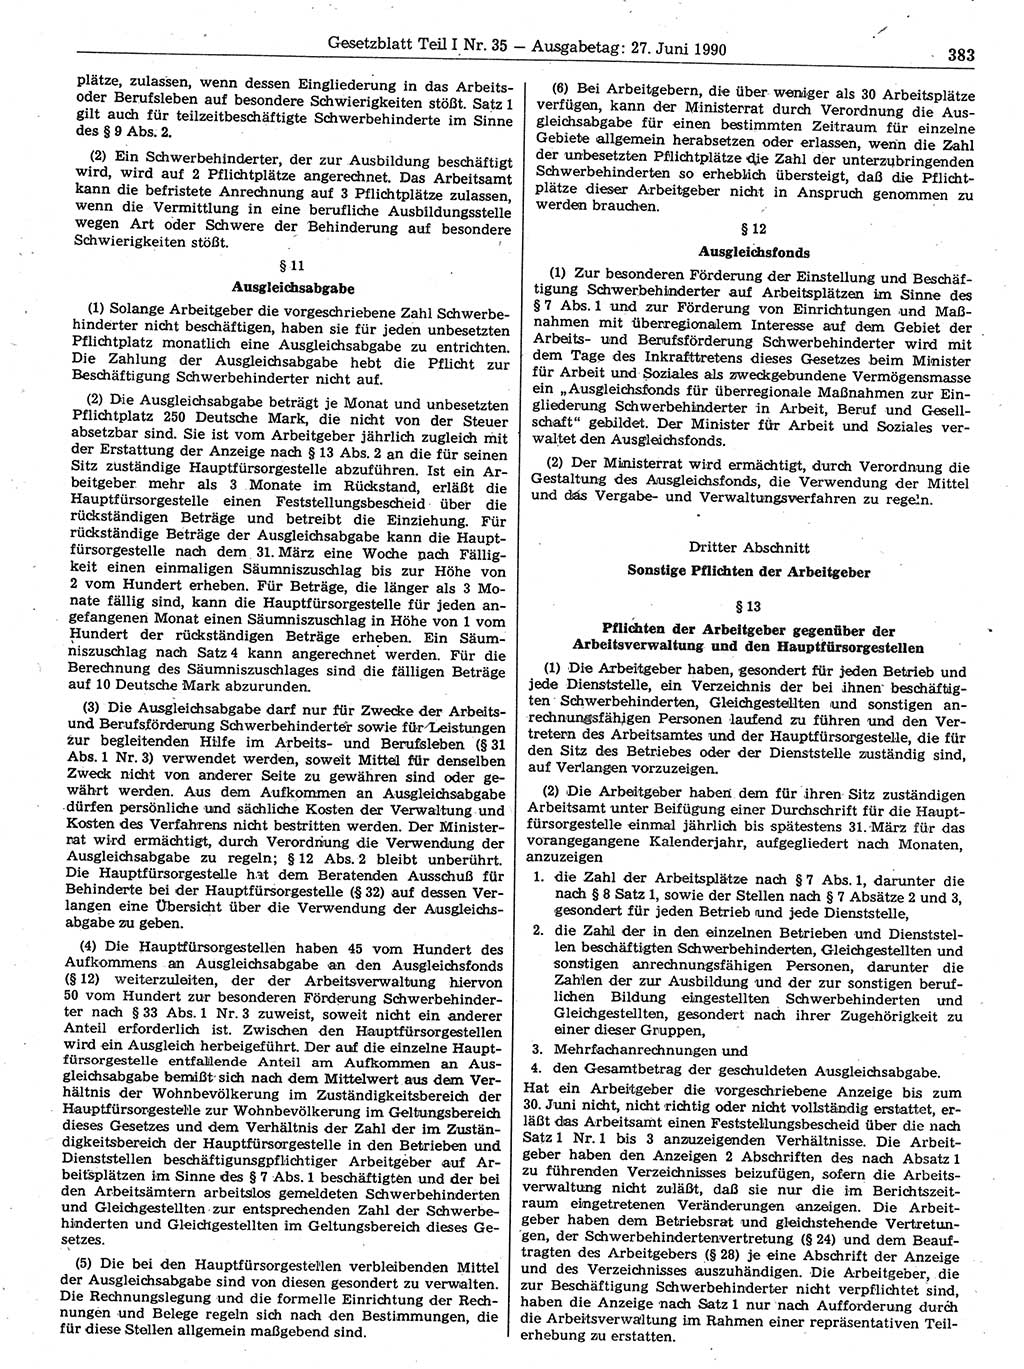 Gesetzblatt (GBl.) der Deutschen Demokratischen Republik (DDR) Teil Ⅰ 1990, Seite 383 (GBl. DDR Ⅰ 1990, S. 383)